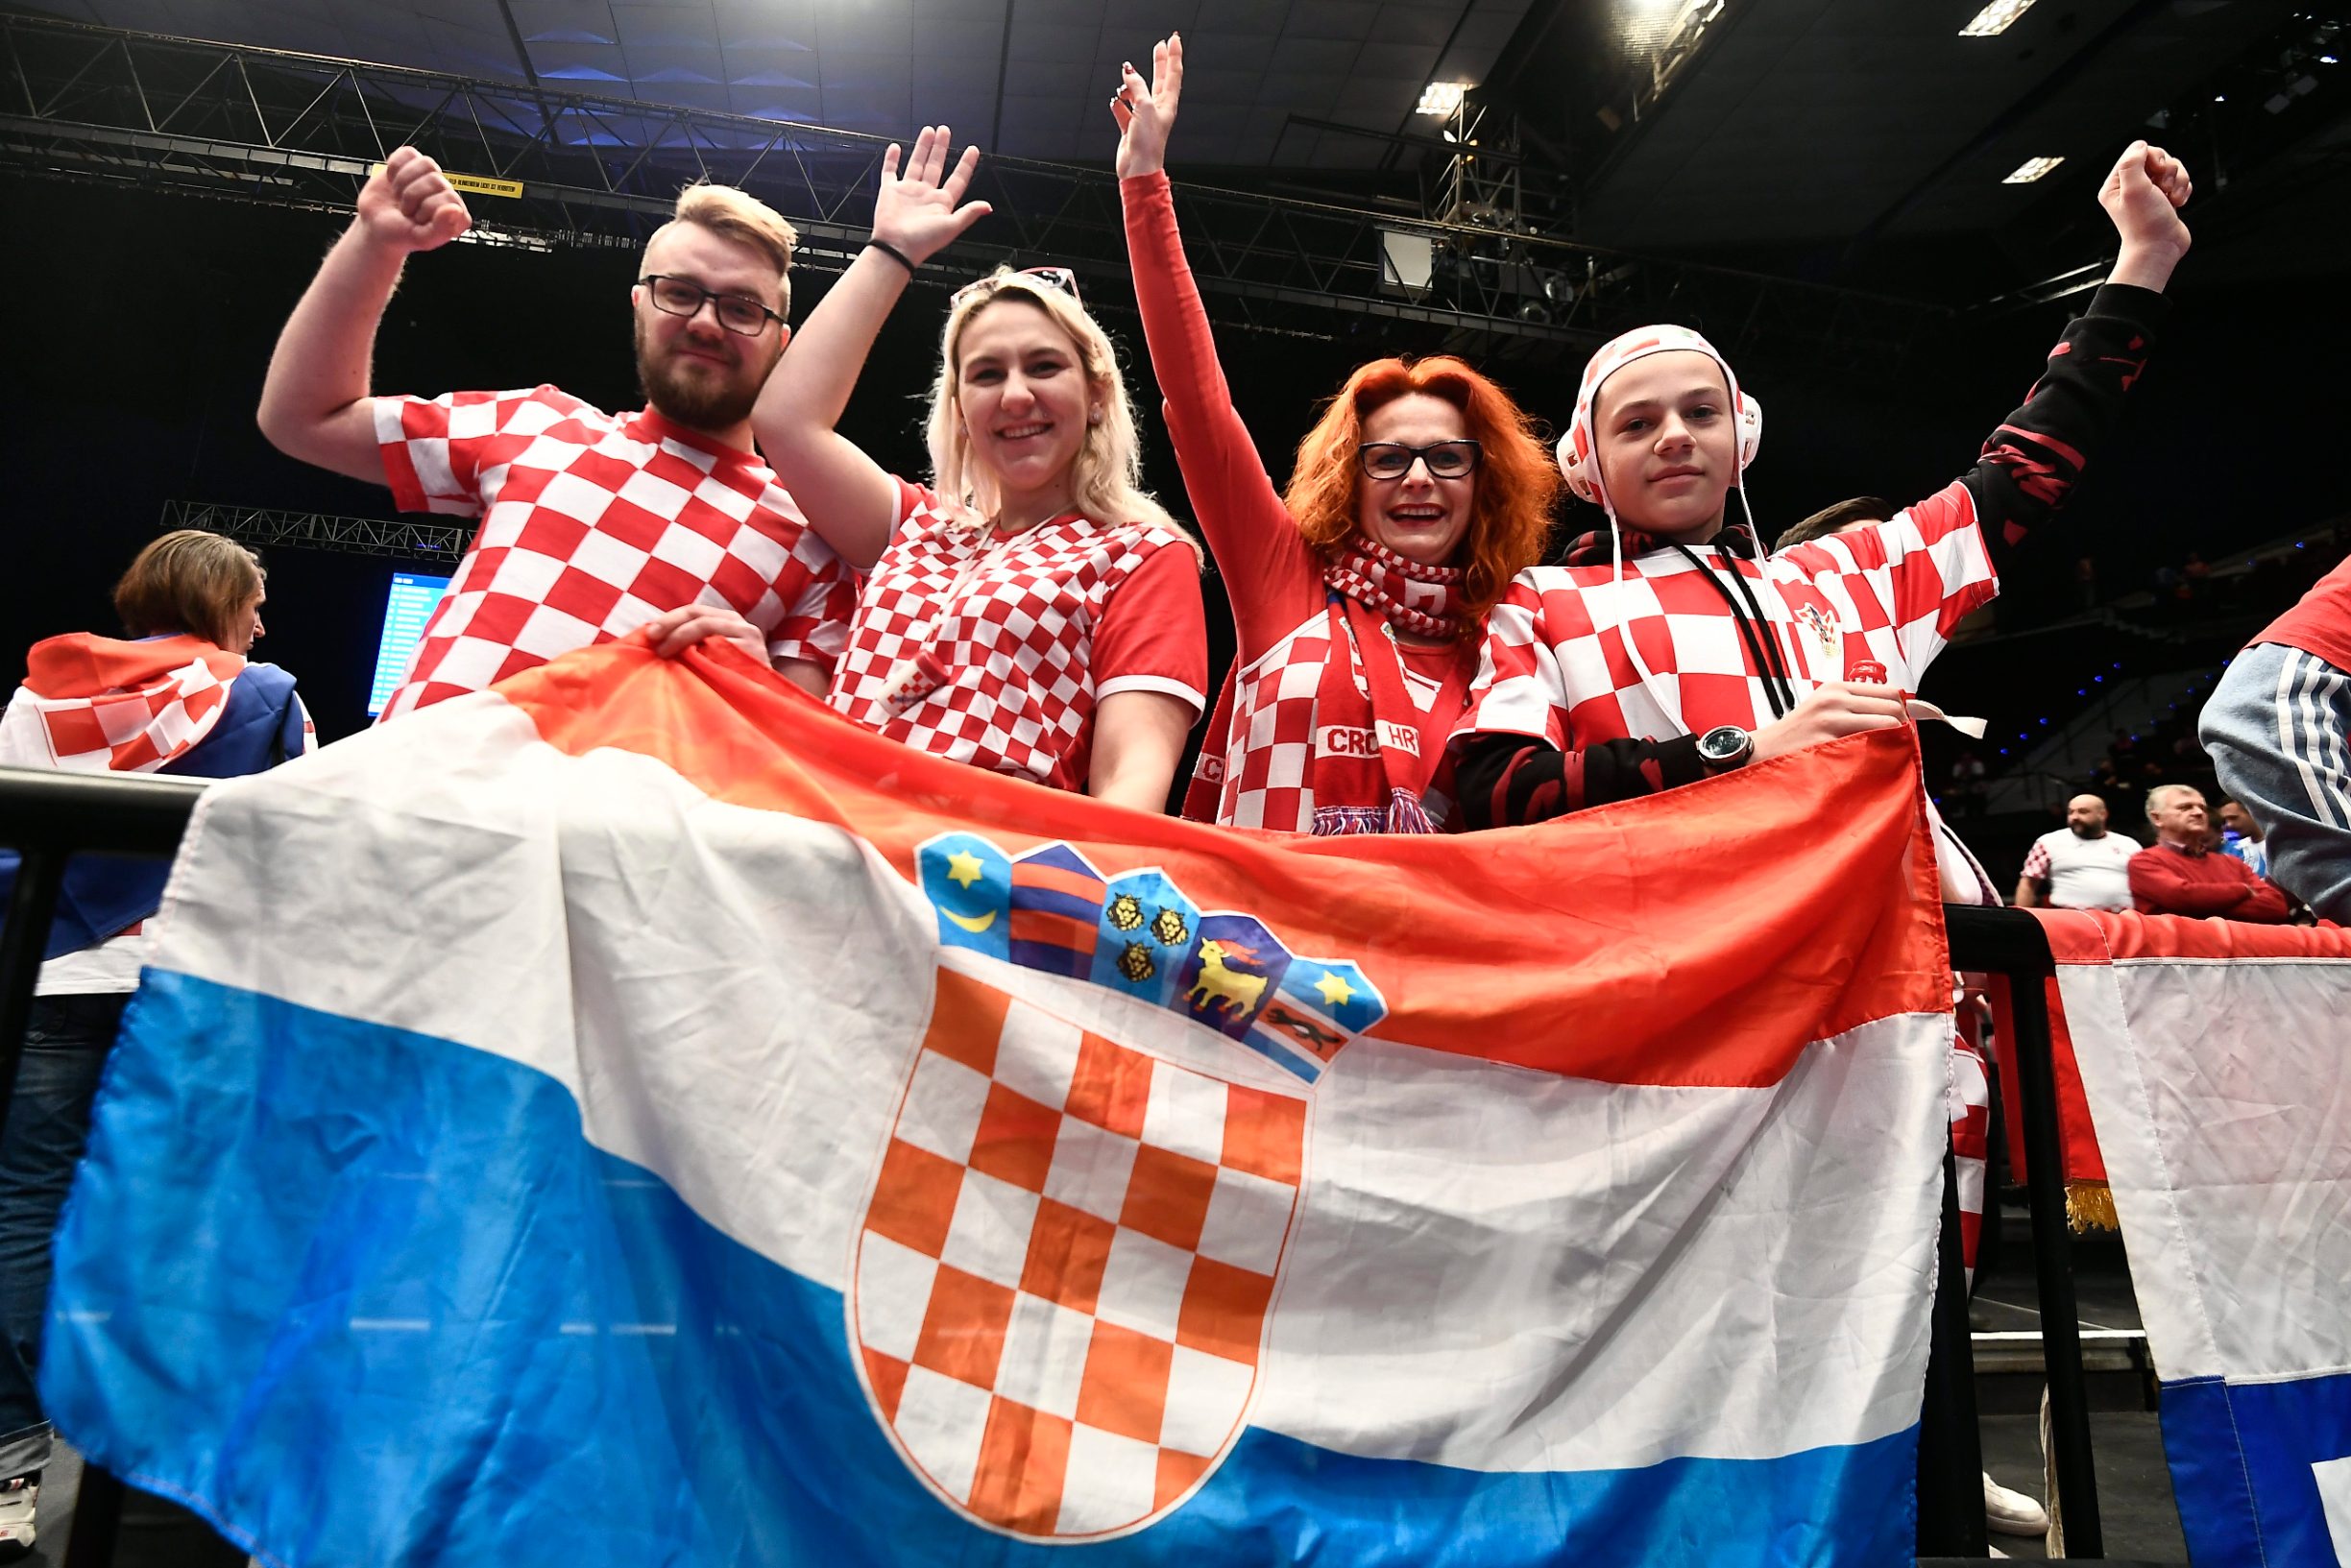 Bec, 220120.
Navijaci na Europskom rukometnom prvenstvu uoci utakmice Hrvatska - Spanjolska.
Foto: Ante Cizmic / CROPIX